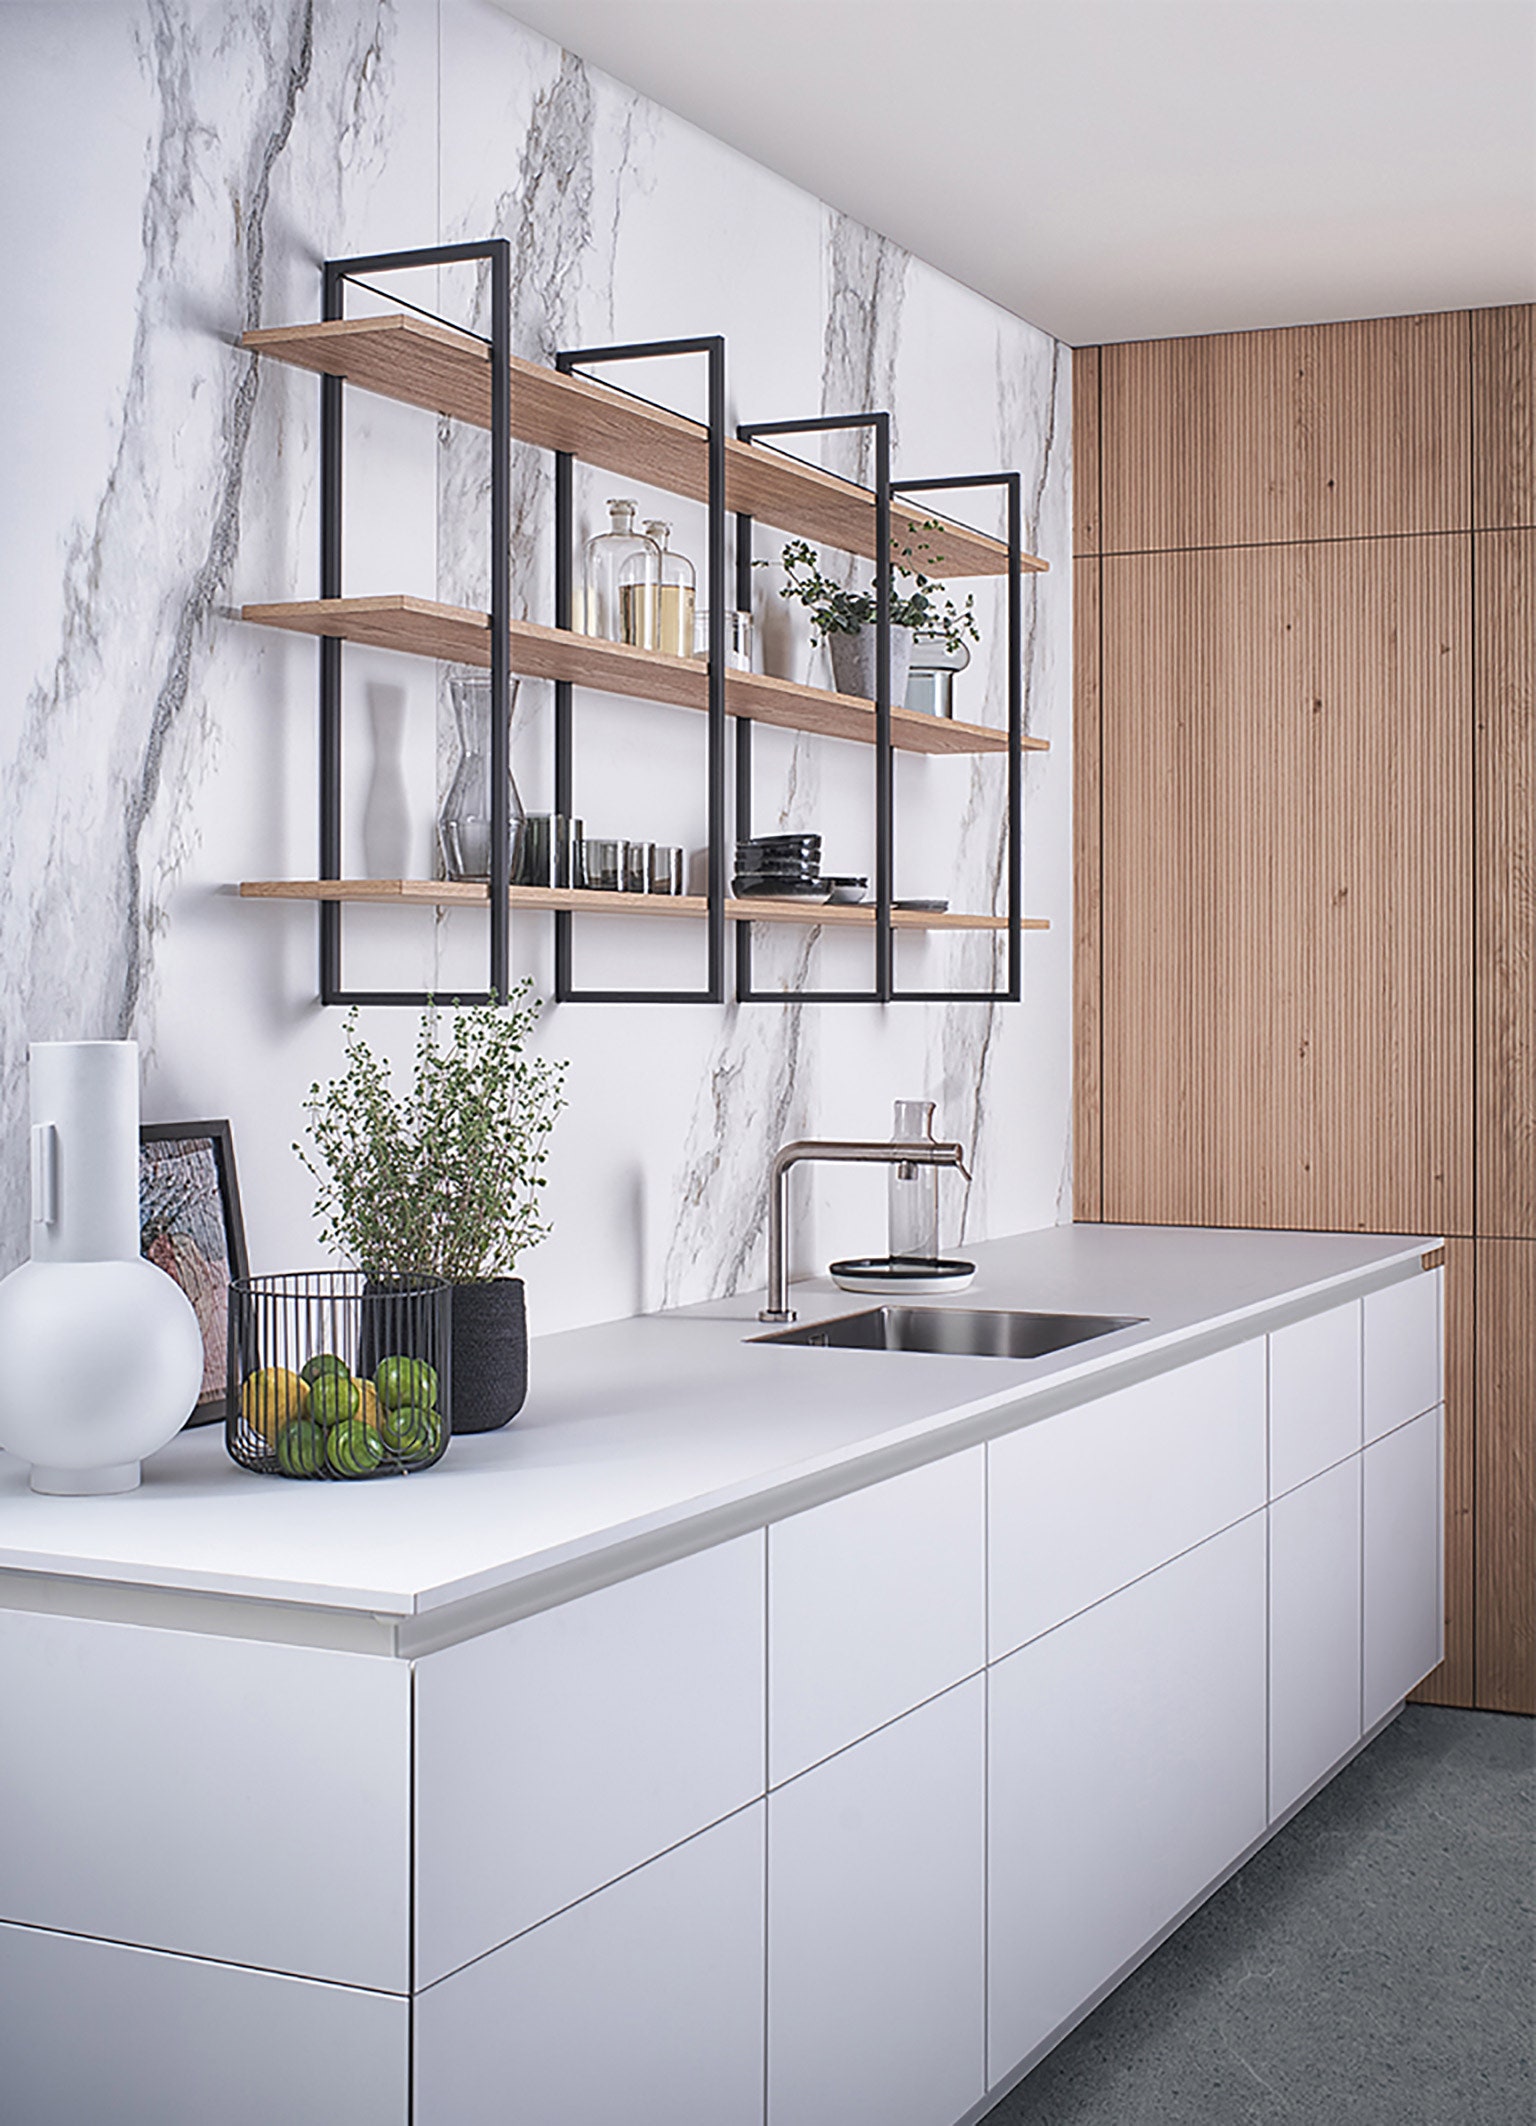 Кухня в стиле мягкого минимализма новая архитектурная коллекция от Leicht